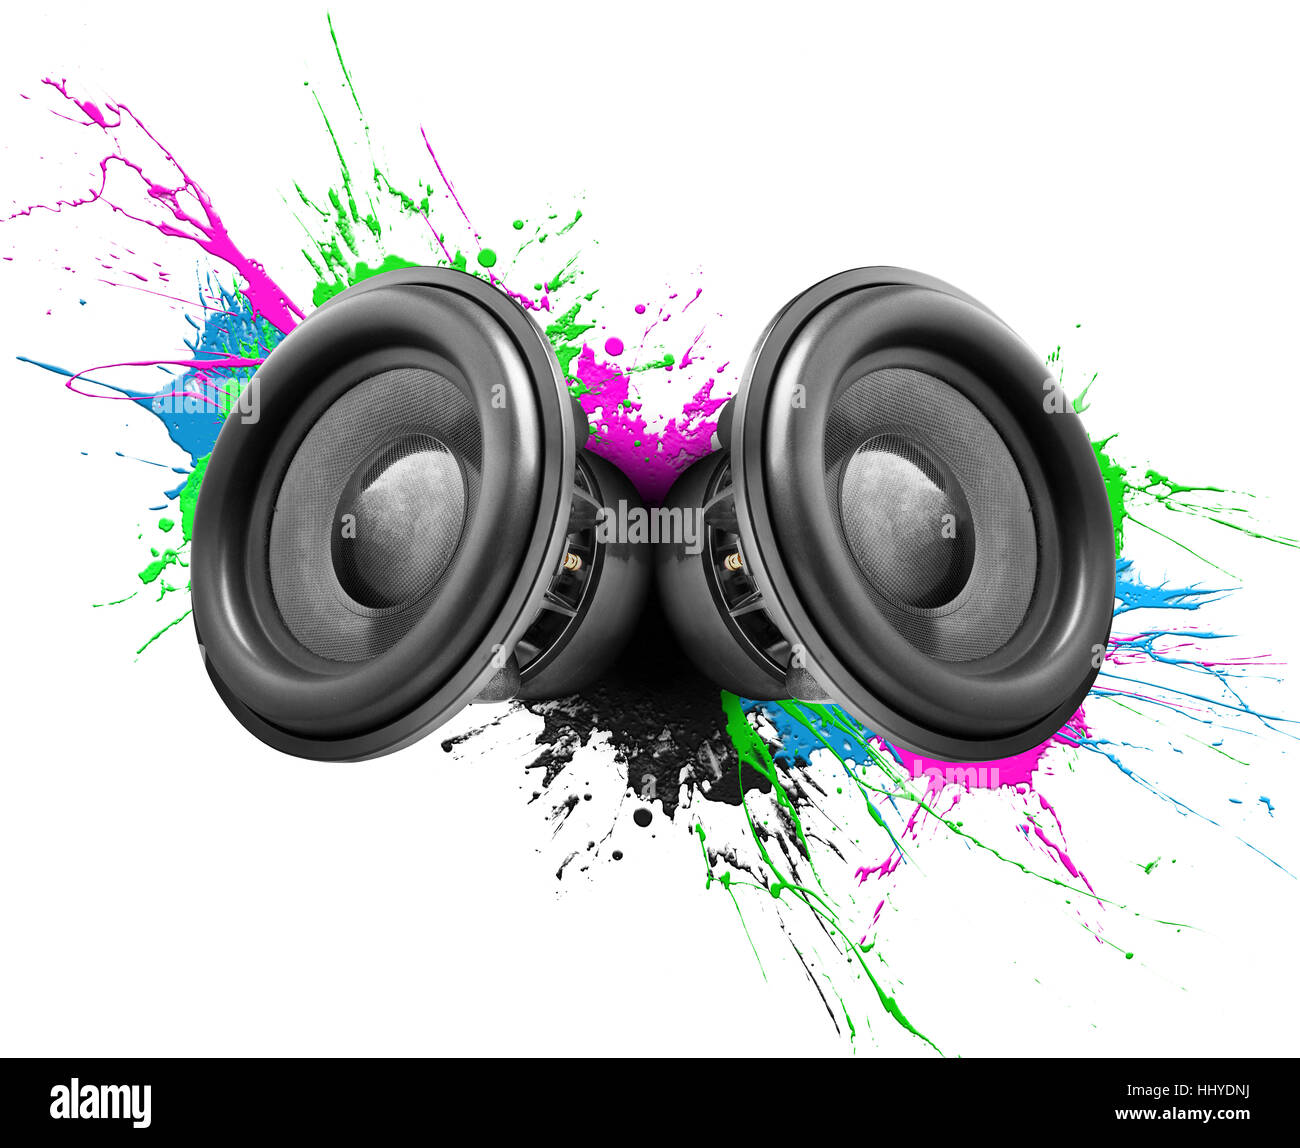 Musik-Lautsprecher mit bunten Farbe spritzt auf weißem Hintergrund Stockfoto